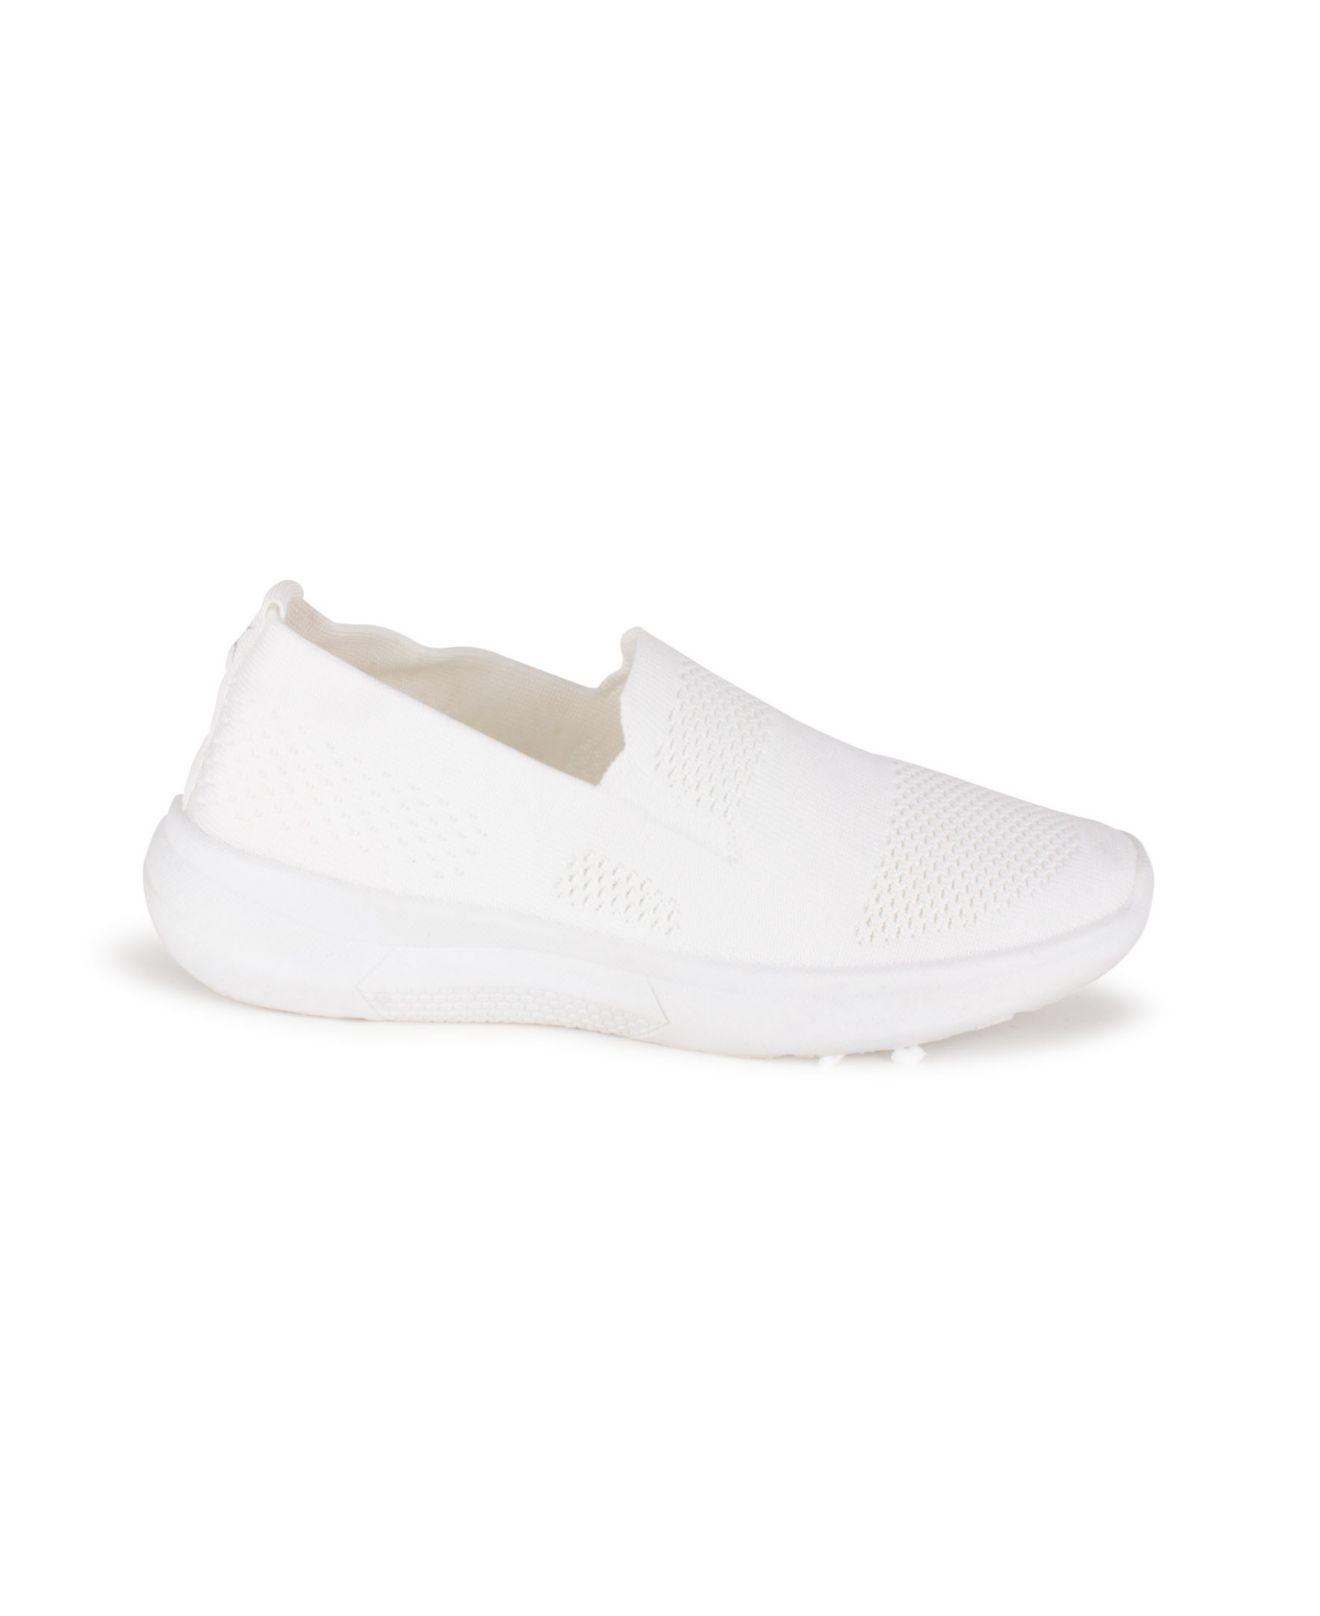 Danskin Admire Slip On Knit Sneakers in White | Lyst